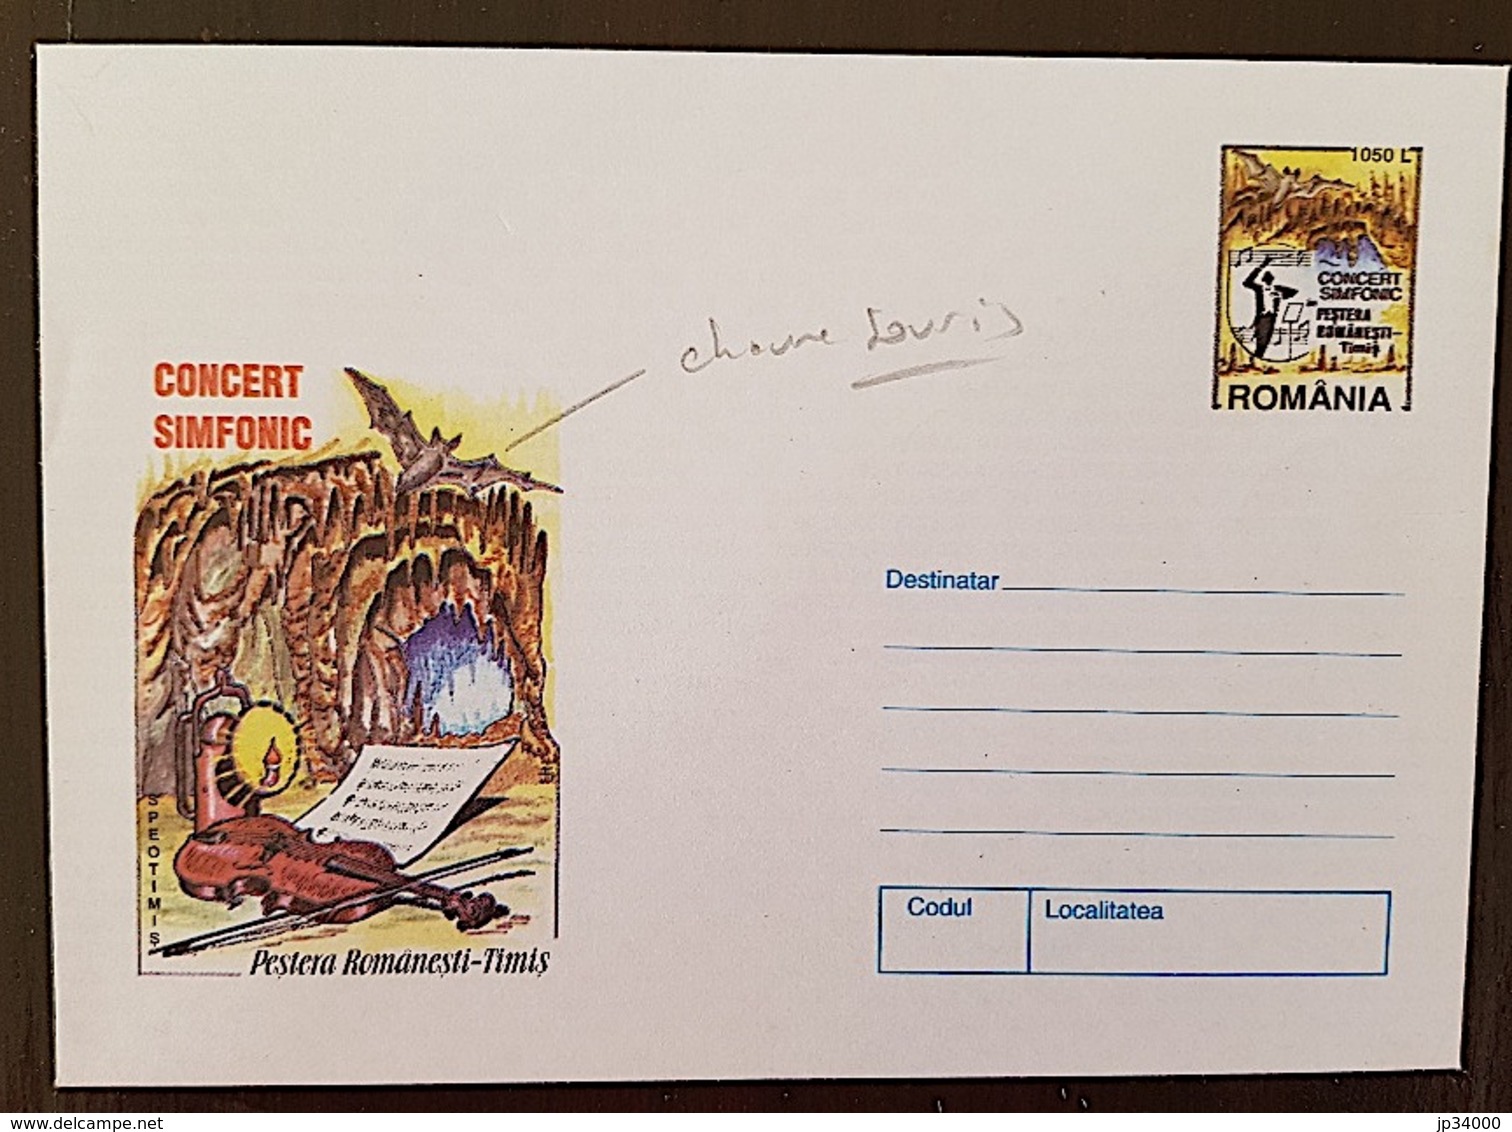 ROUMANIE Chauve Souris, Bat, Muerciélago. Entier Postal Neuf Emis En 1998. (Violon, Grotte, Chauve Souris) - Bats